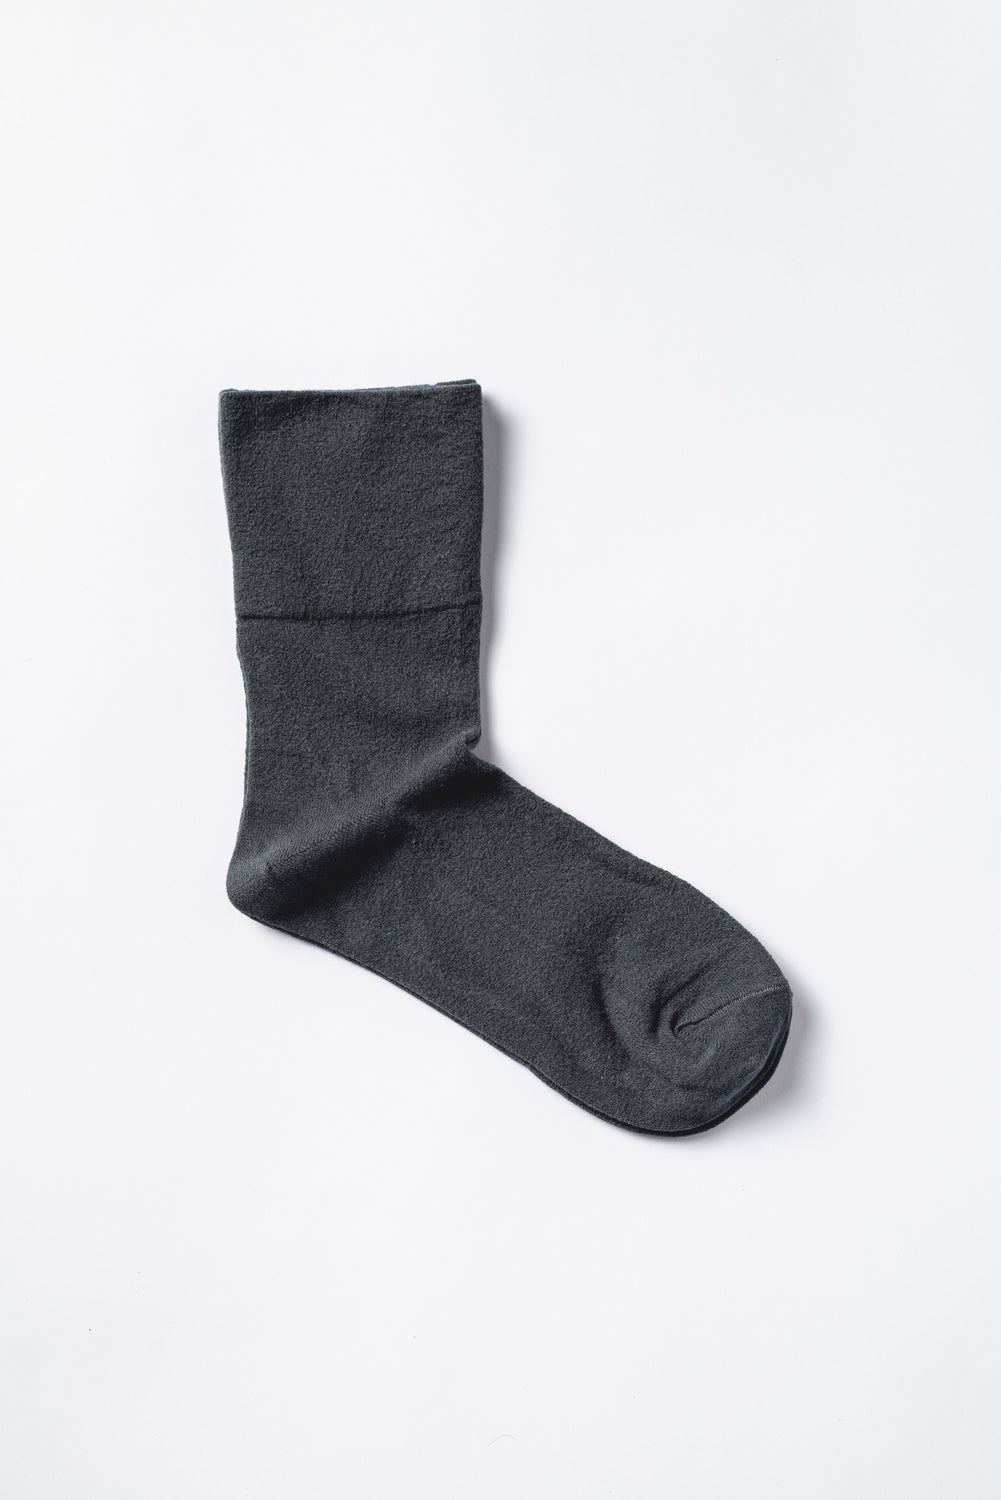 Foot Comfort Socks, Charcoal